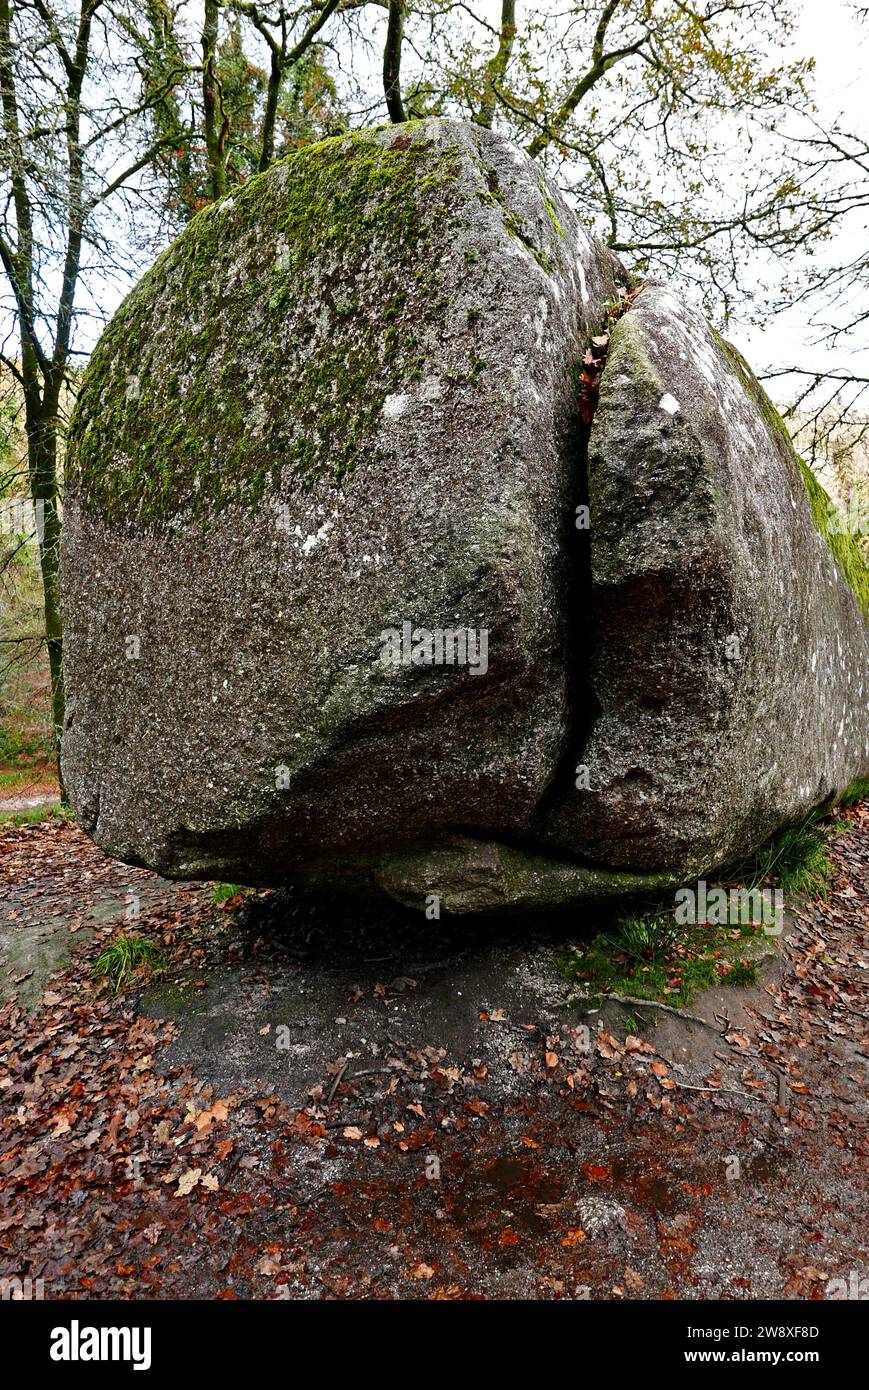 Foret domaniale de Huelgoat, la roche tremblante ; Finistère, Bretagne, France, Europe Banque D'Images